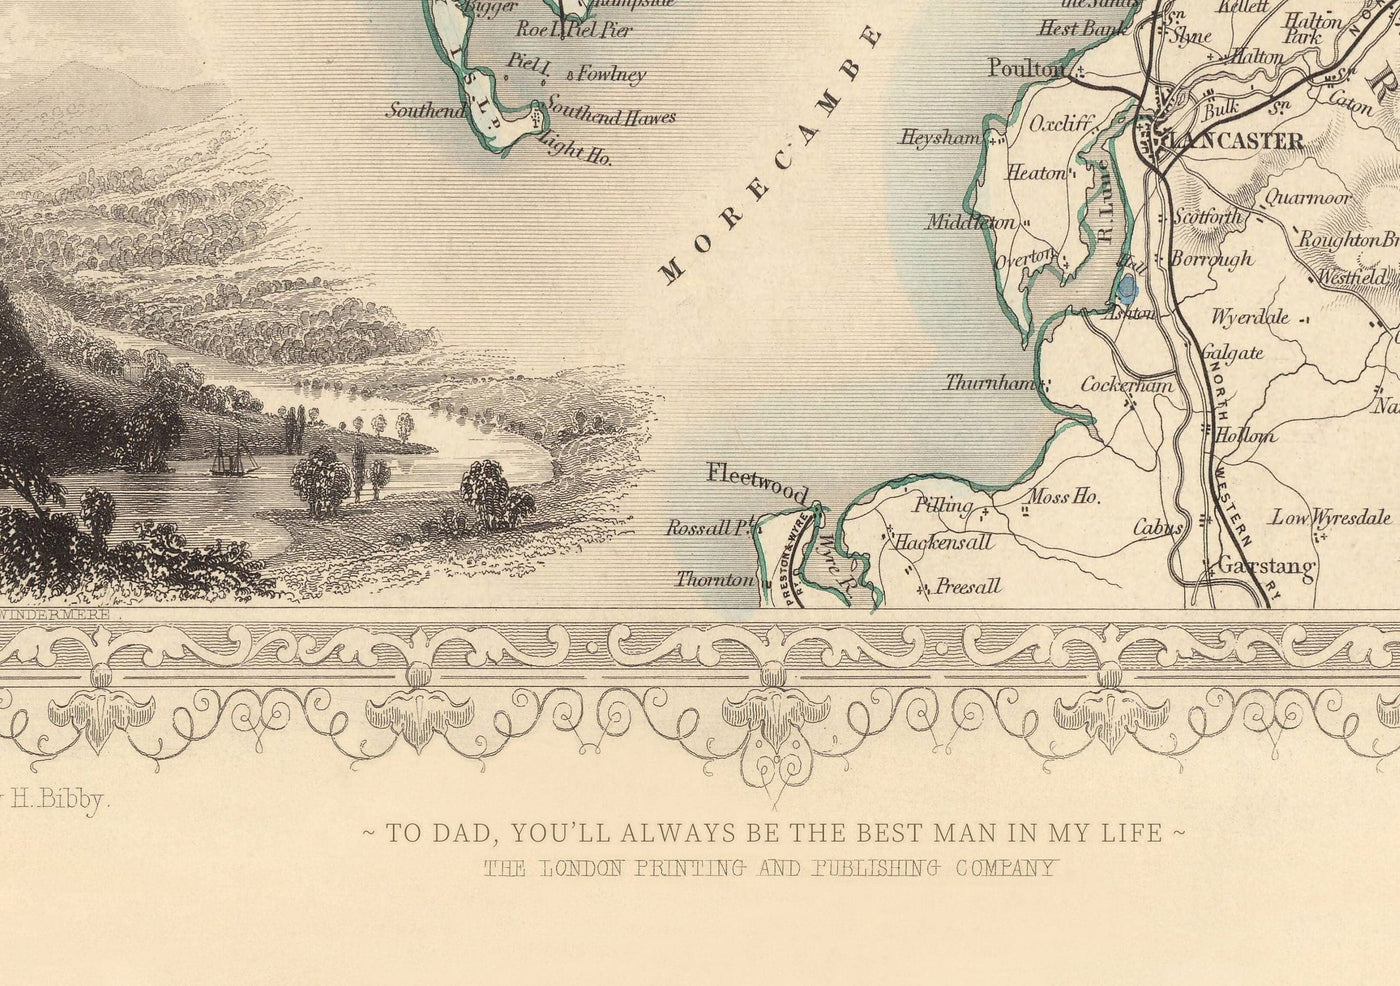 Alte Karte von Aberdeen, Schottland 1851 von Tallis & Rapkin